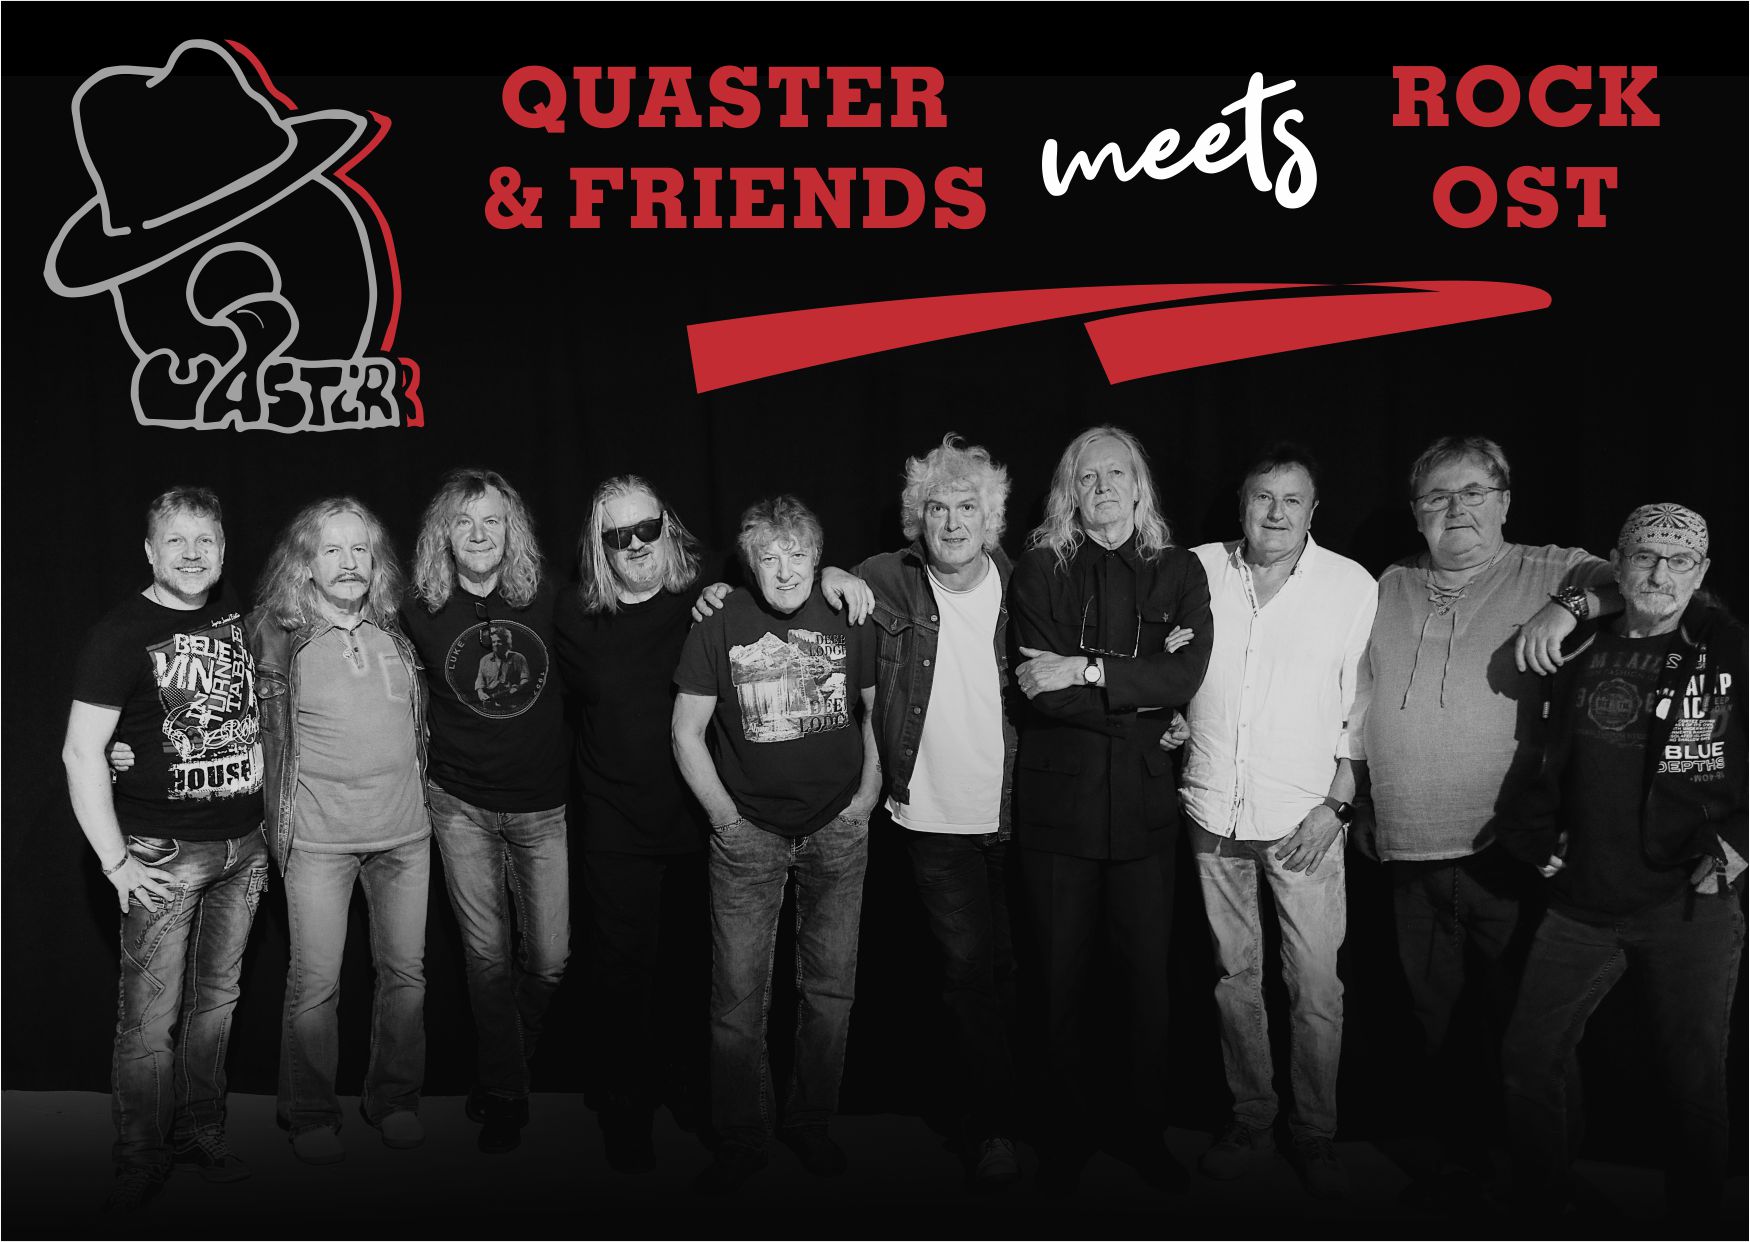 Quaster meets Rock Ost